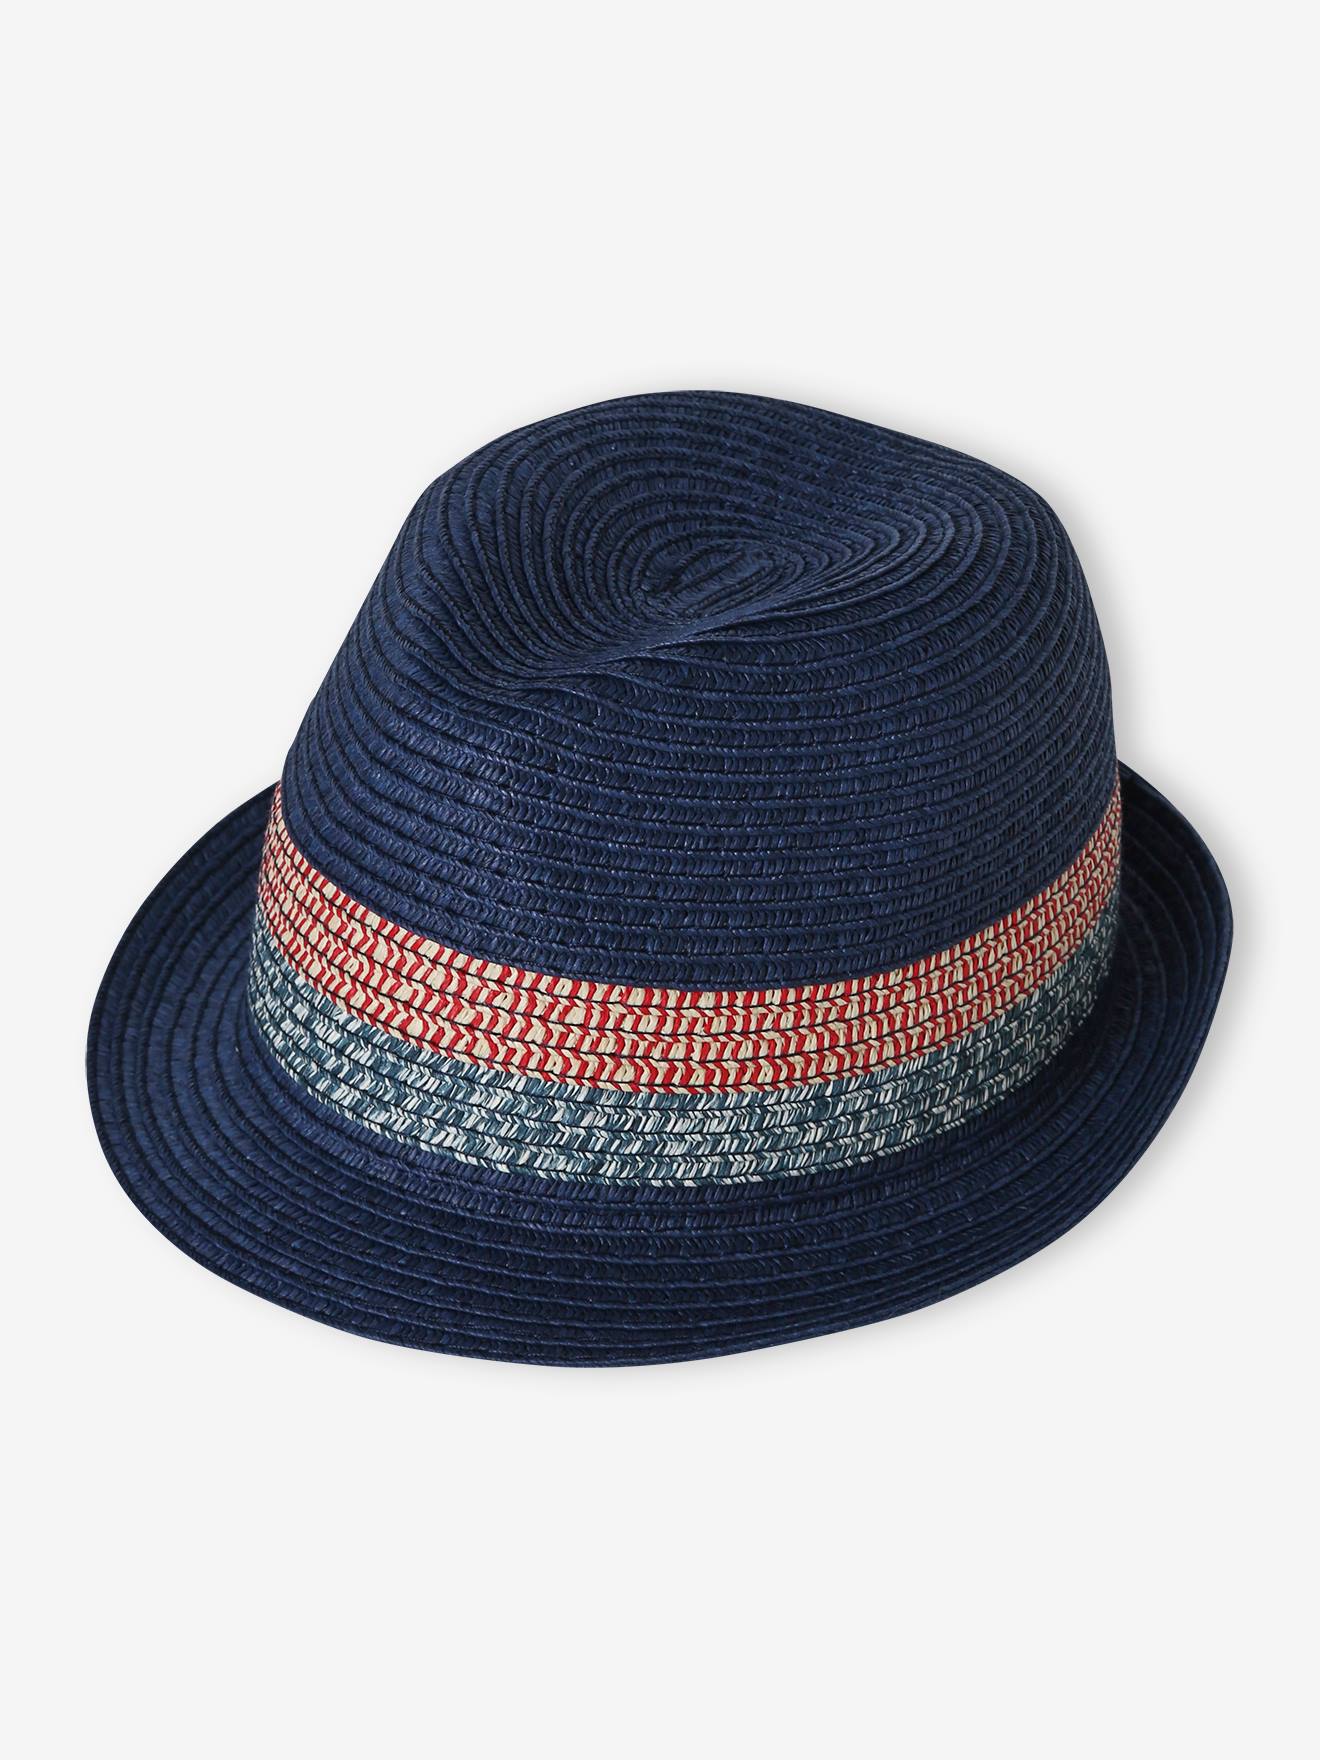 VERTBAUDET Sombrero panamá aspecto paja, para niño azul marino